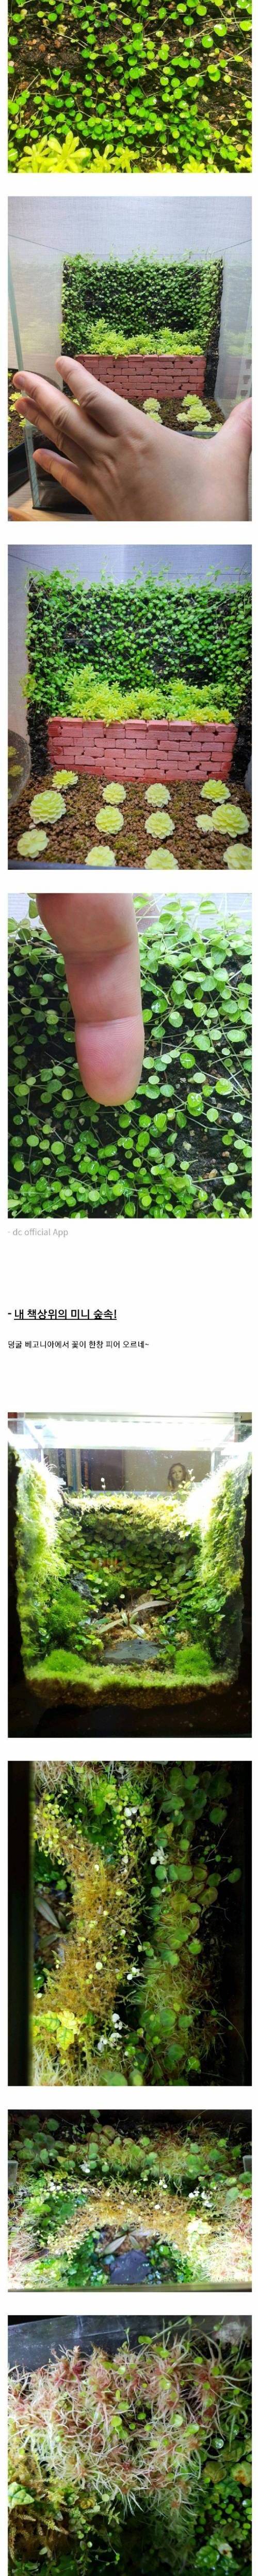 [스압] 초미니 정원을 만든 디씨인.jpg